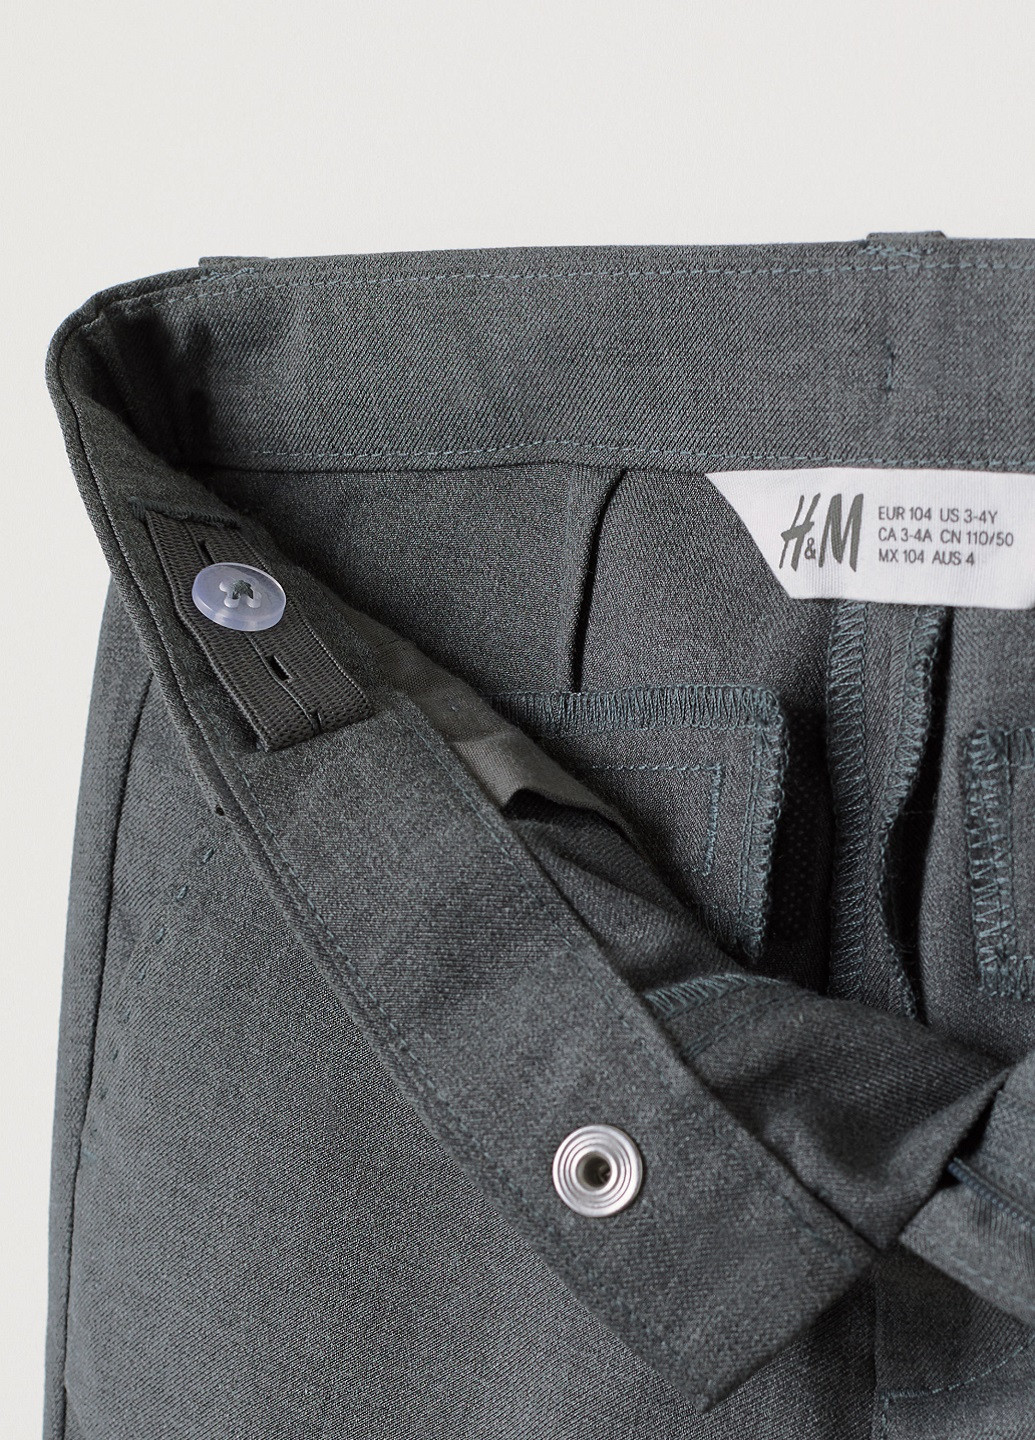 Серые классические демисезонные брюки прямые H&M